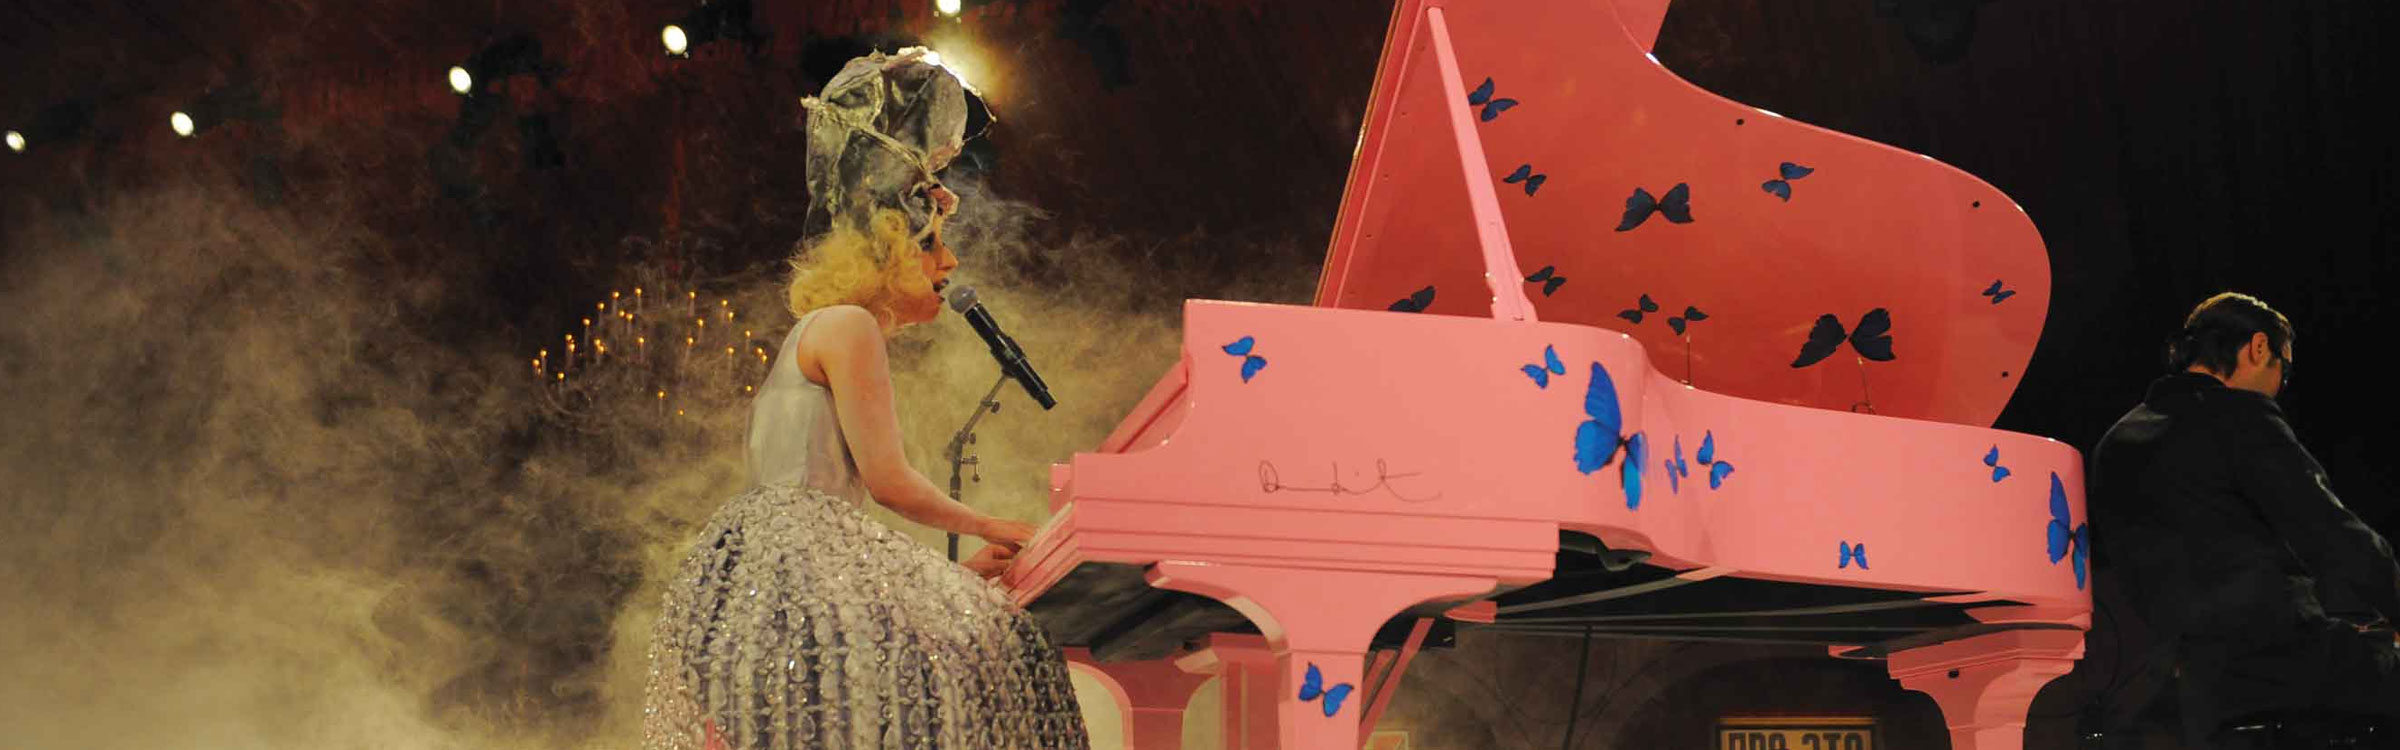 Lady gaga piano header